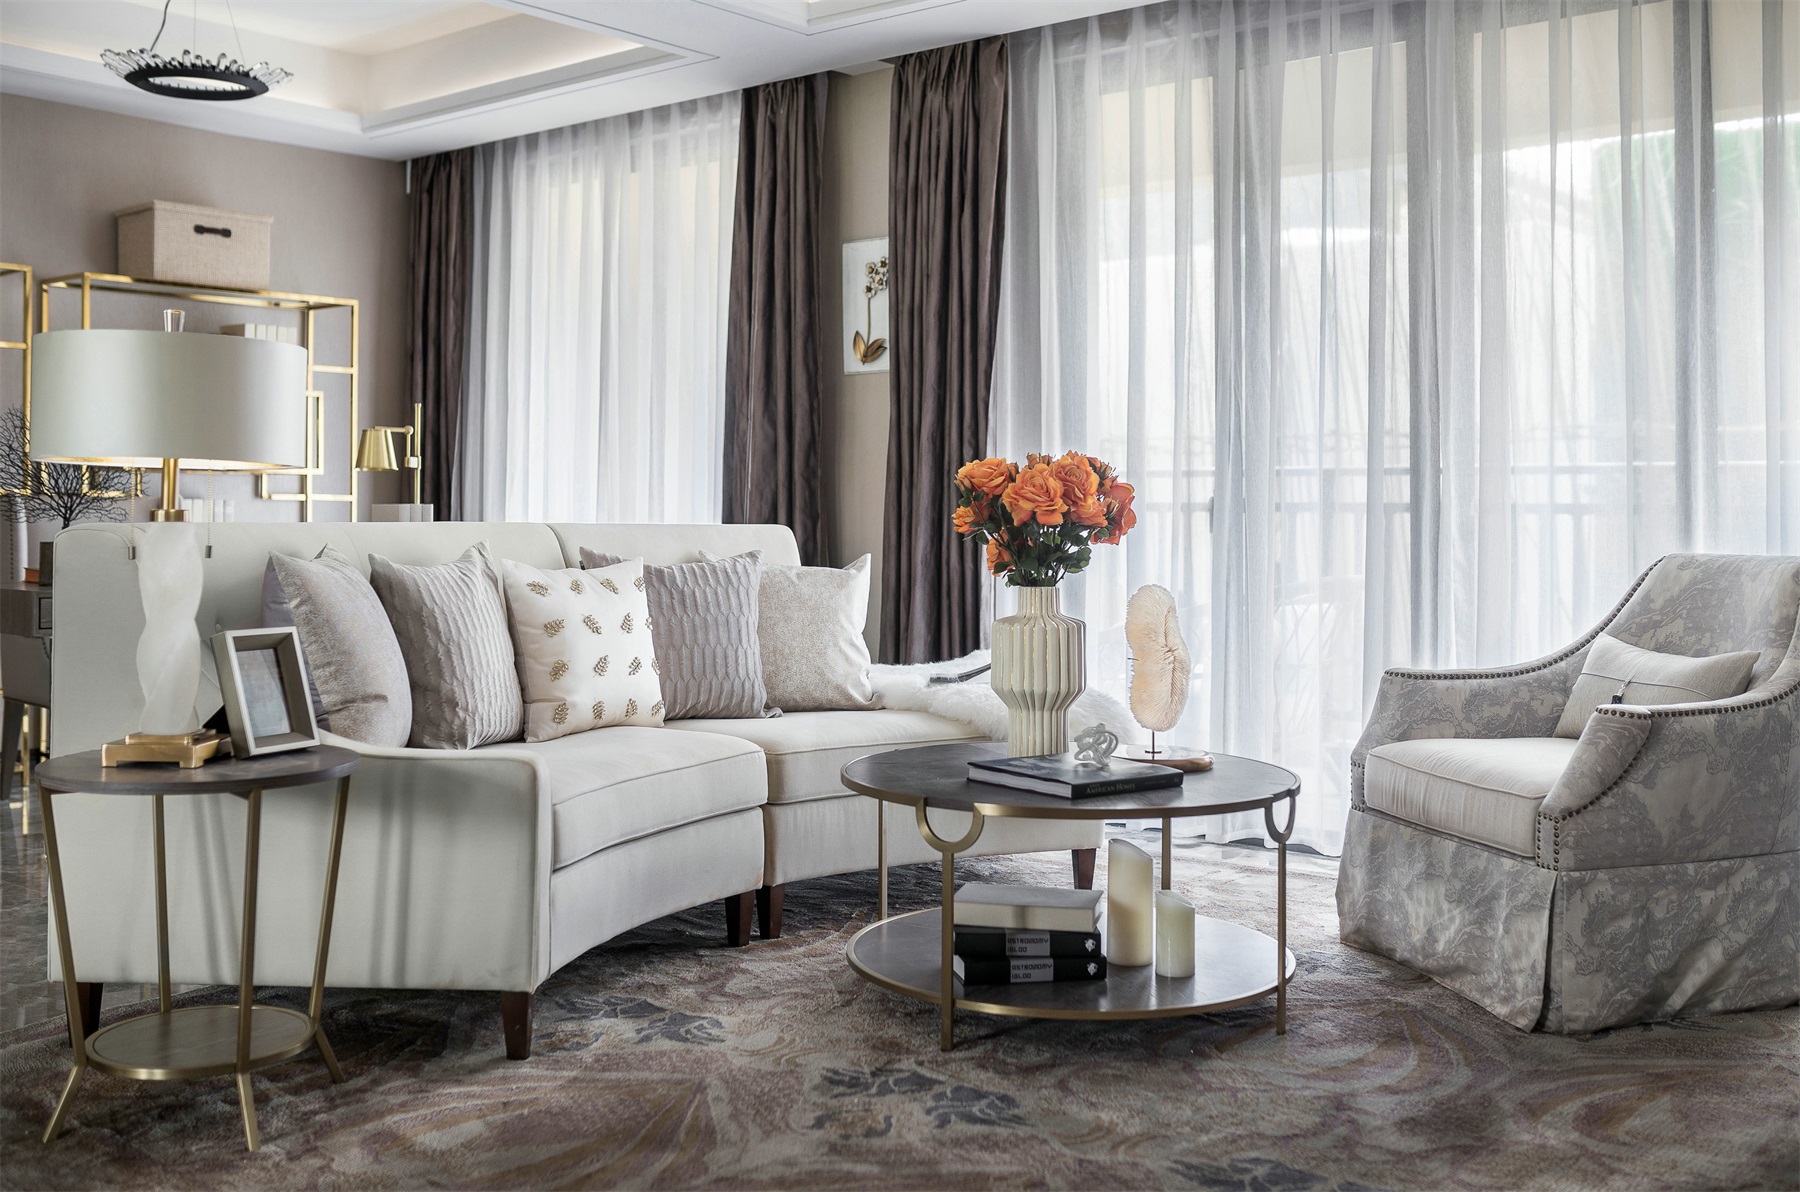 客厅配色素雅，设计精致而大气，布艺搭配金属元素，自然过渡，彰显品质。